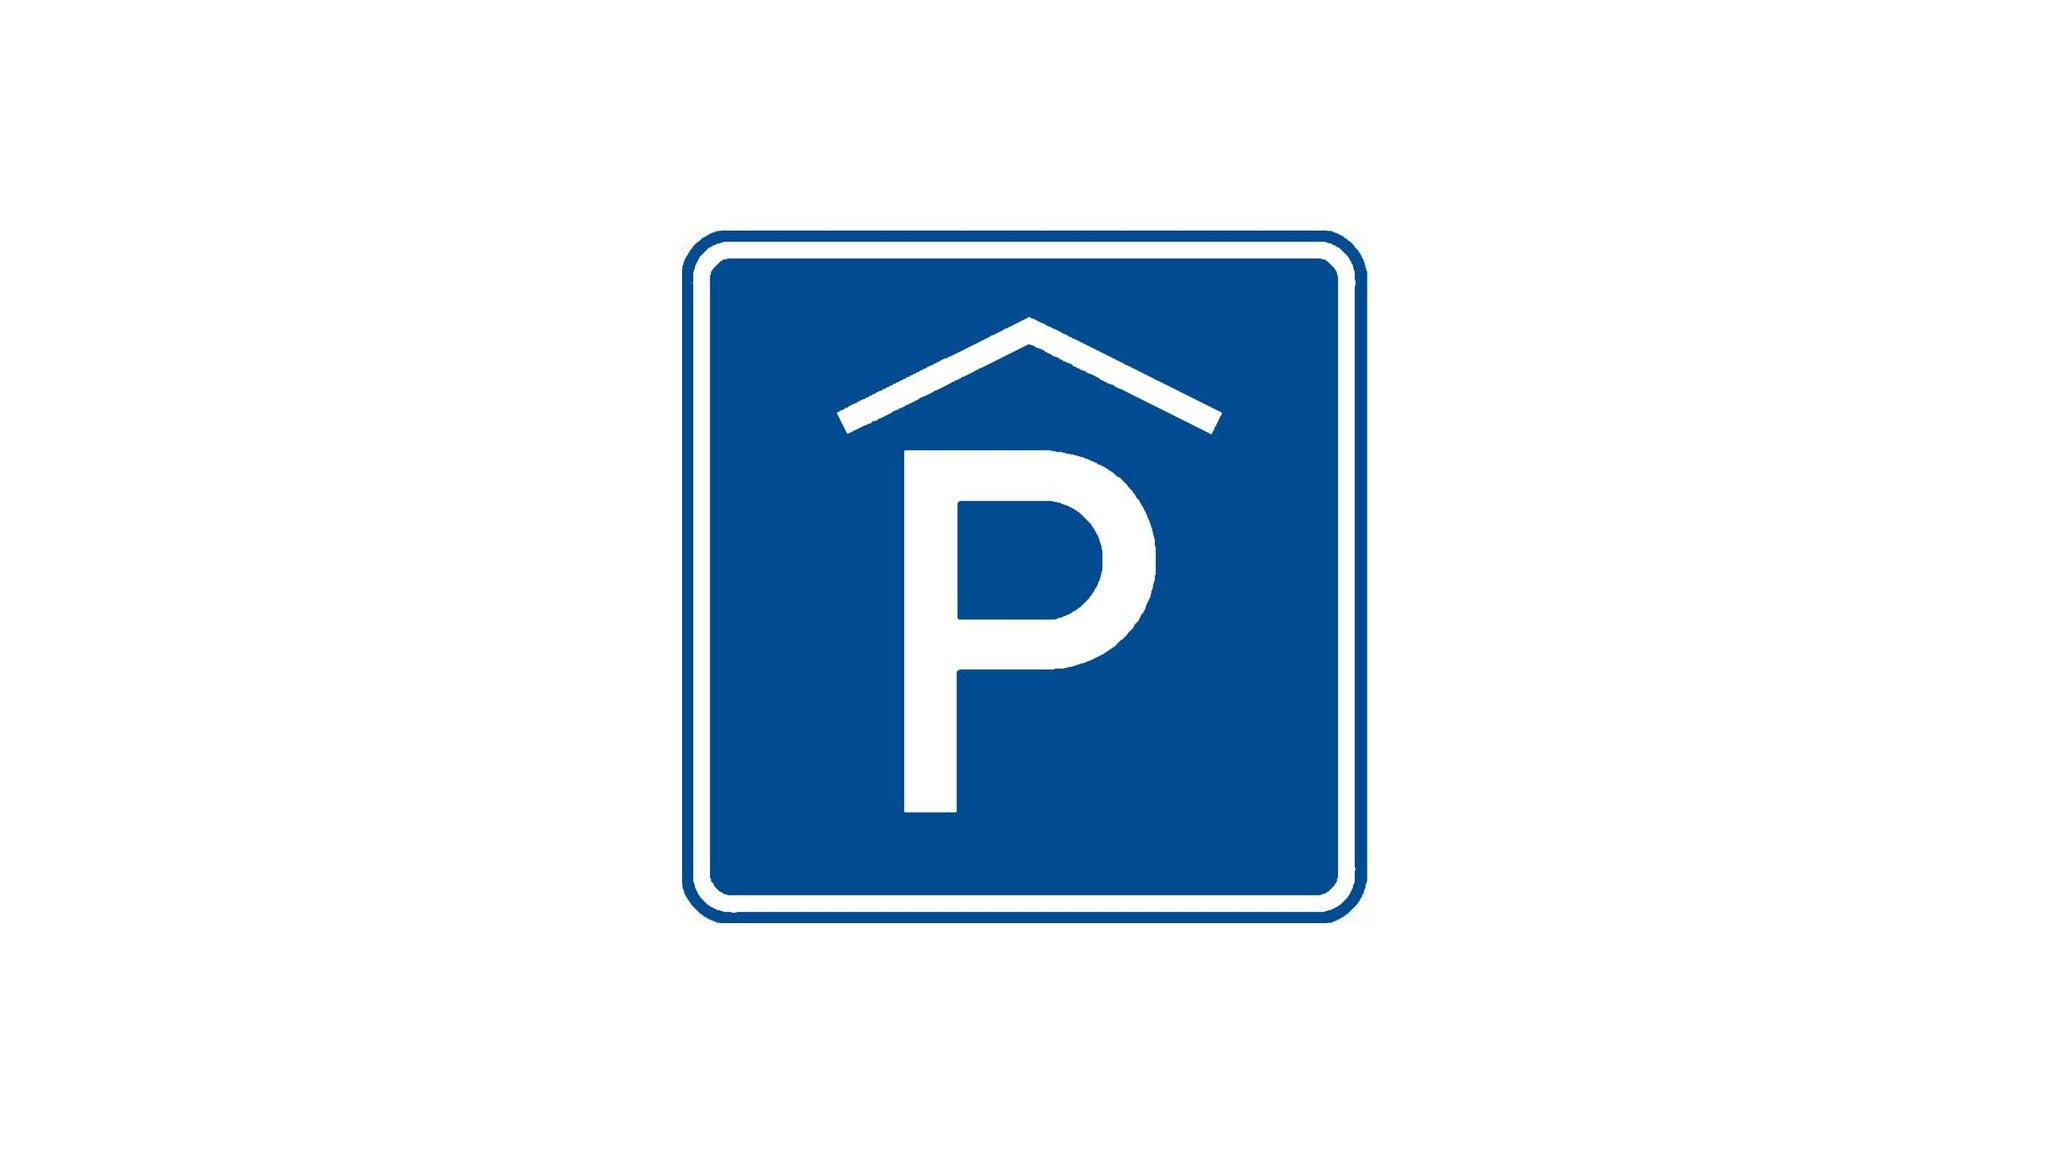 Parkovací lístek - KAPITÁN DEMO- Praha -Parkovací dům O2 areny Praha 9 Lisabonská 2422, Praha 9 19000